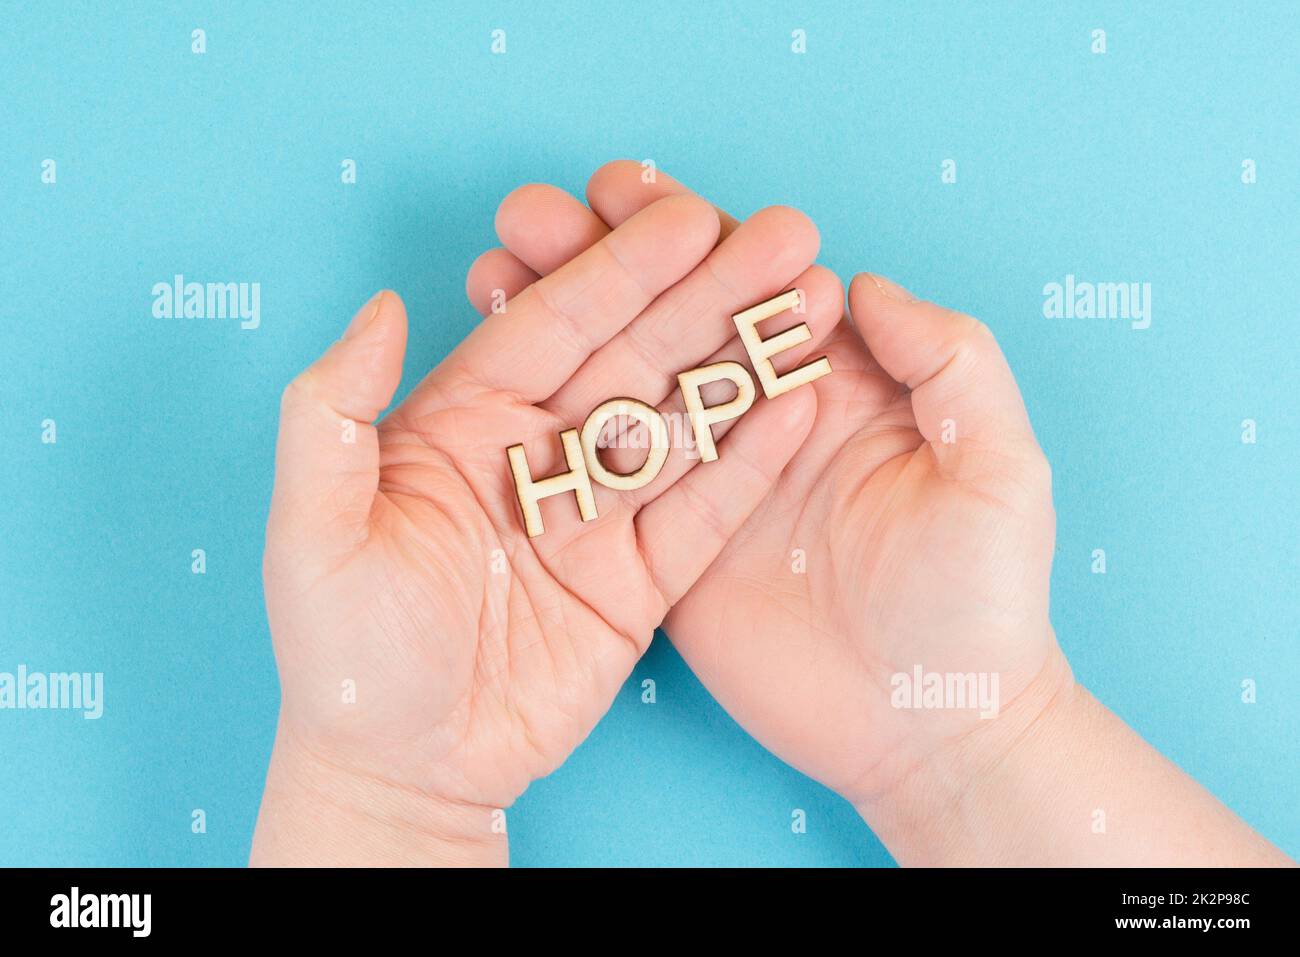 Das Wort Hoffnung in den Händen halten, Vertrauen und glauben Konzept, Vertrauen in die Zukunft haben, hoffnungsvoll positive Denkweise Stockfoto